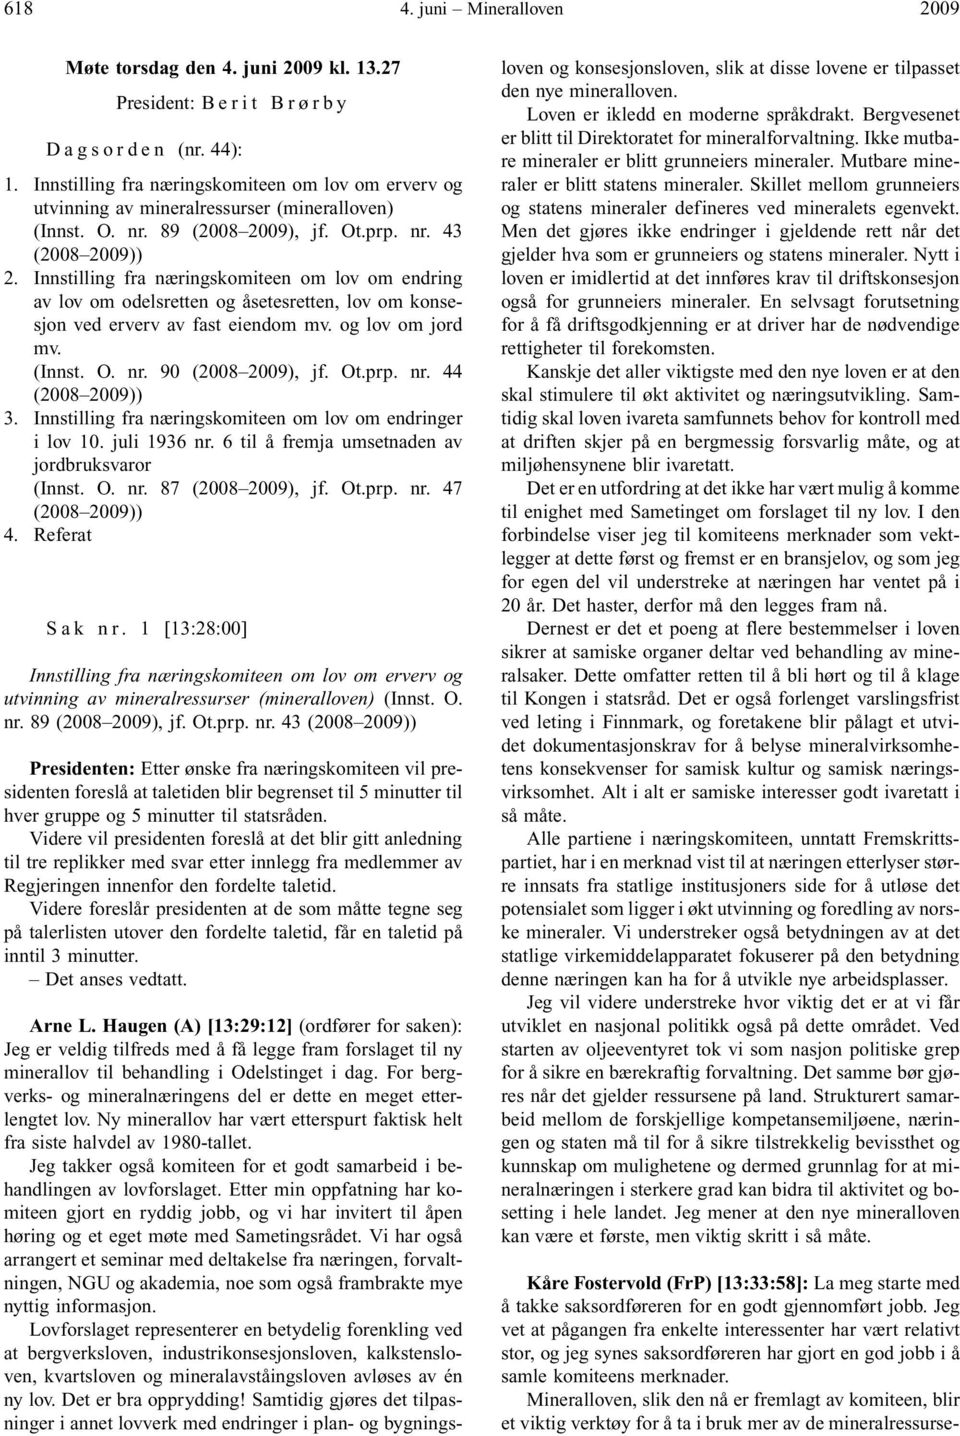 Innstilling fra næringskomiteen om lov om endring av lov om odelsretten og åsetesretten, lov om konsesjon ved erverv av fast eiendom mv. og lov om jord mv. (Innst. O. nr. 90 (2008 ), jf. Ot.prp. nr. 44 (2008 )) 3.